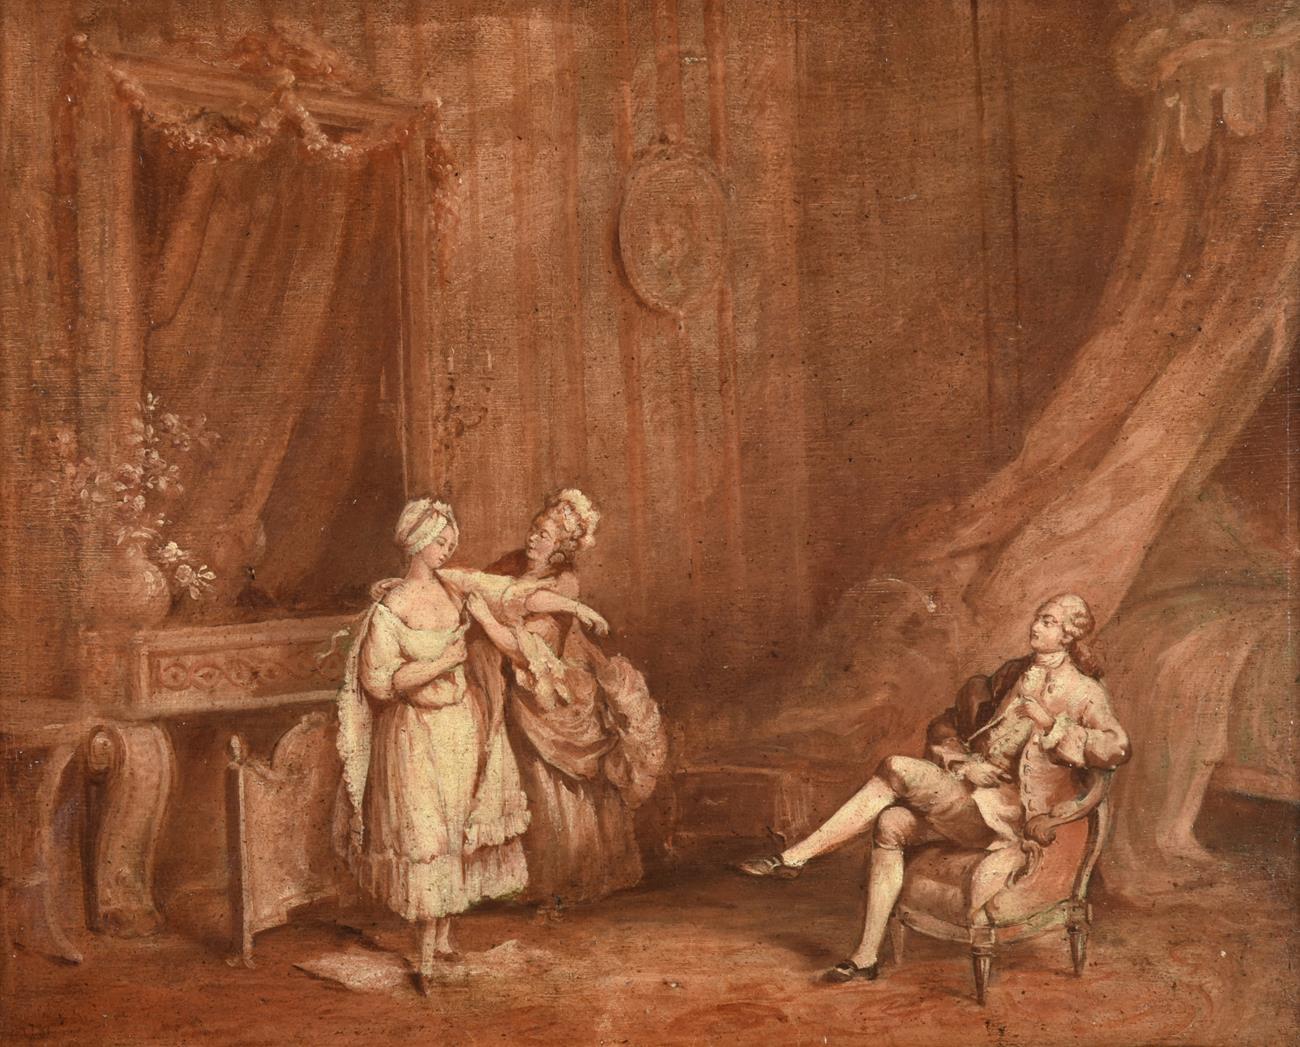 Fines figures élégantes françaises du début des années 1700, dame habillée, intérieur rococo